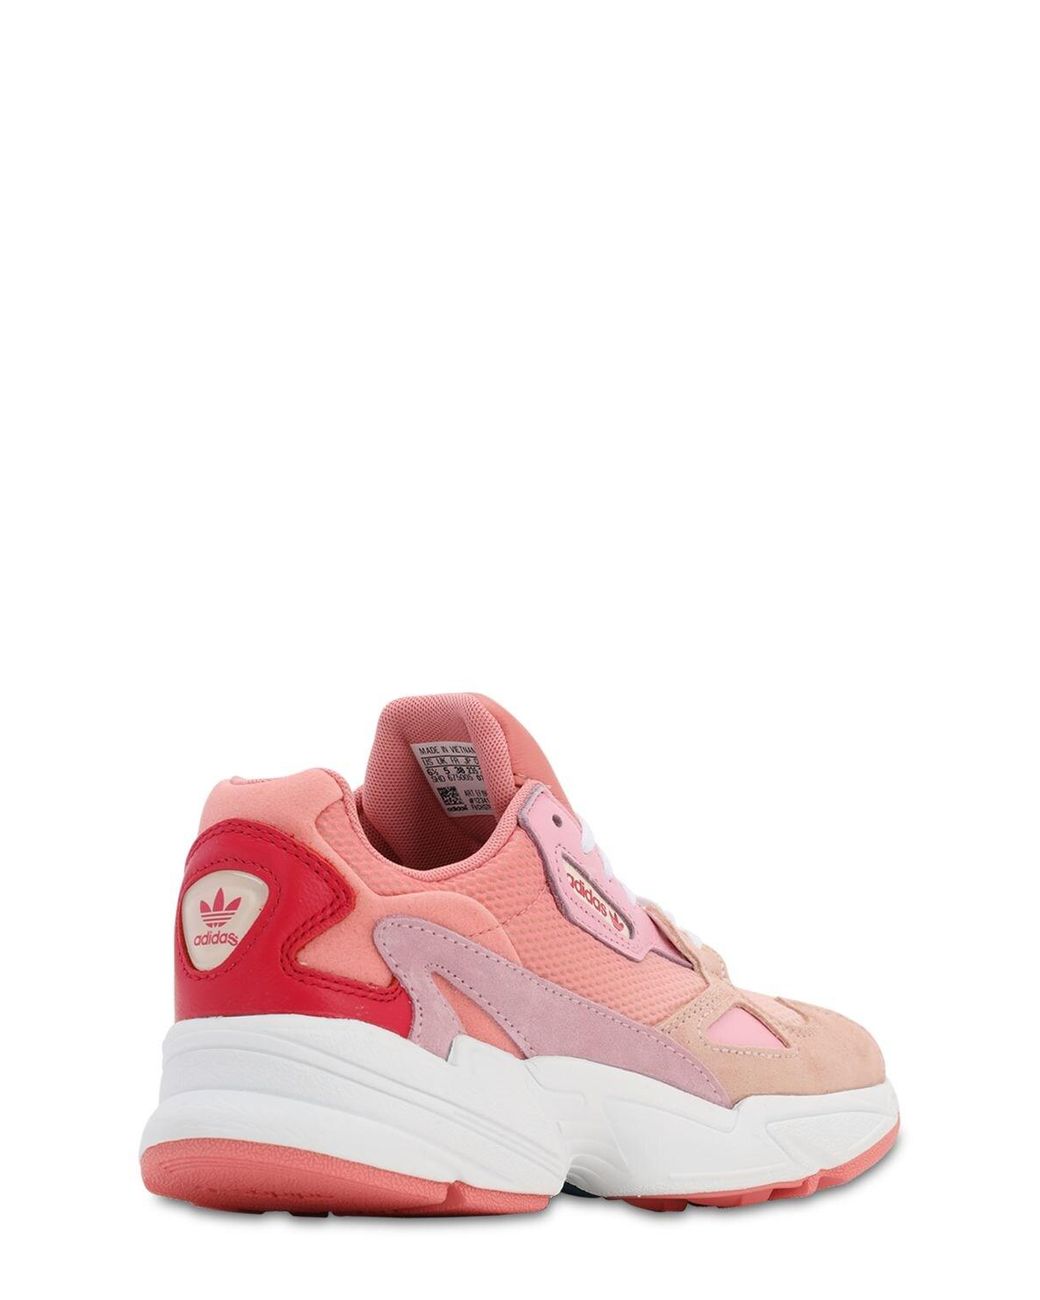 لبس المساج adidas Originals Leather Falcon in Peach/Peach (Pink) - Save 51 ... لبس المساج